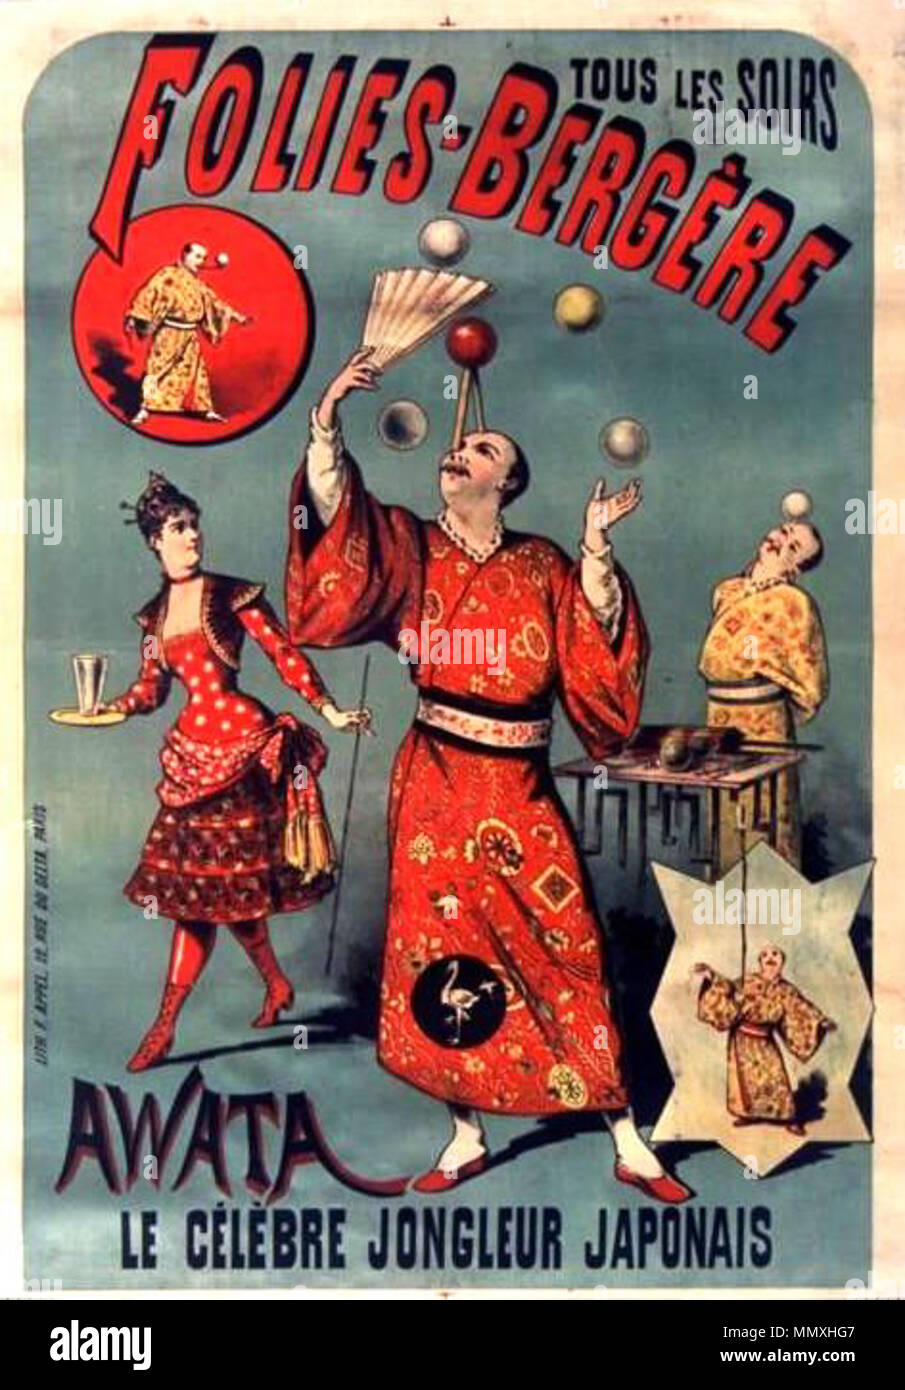 Folies-Bergère. Tous les soirs Awata, le célèbre jongleur japonais 1895 Foto de stock